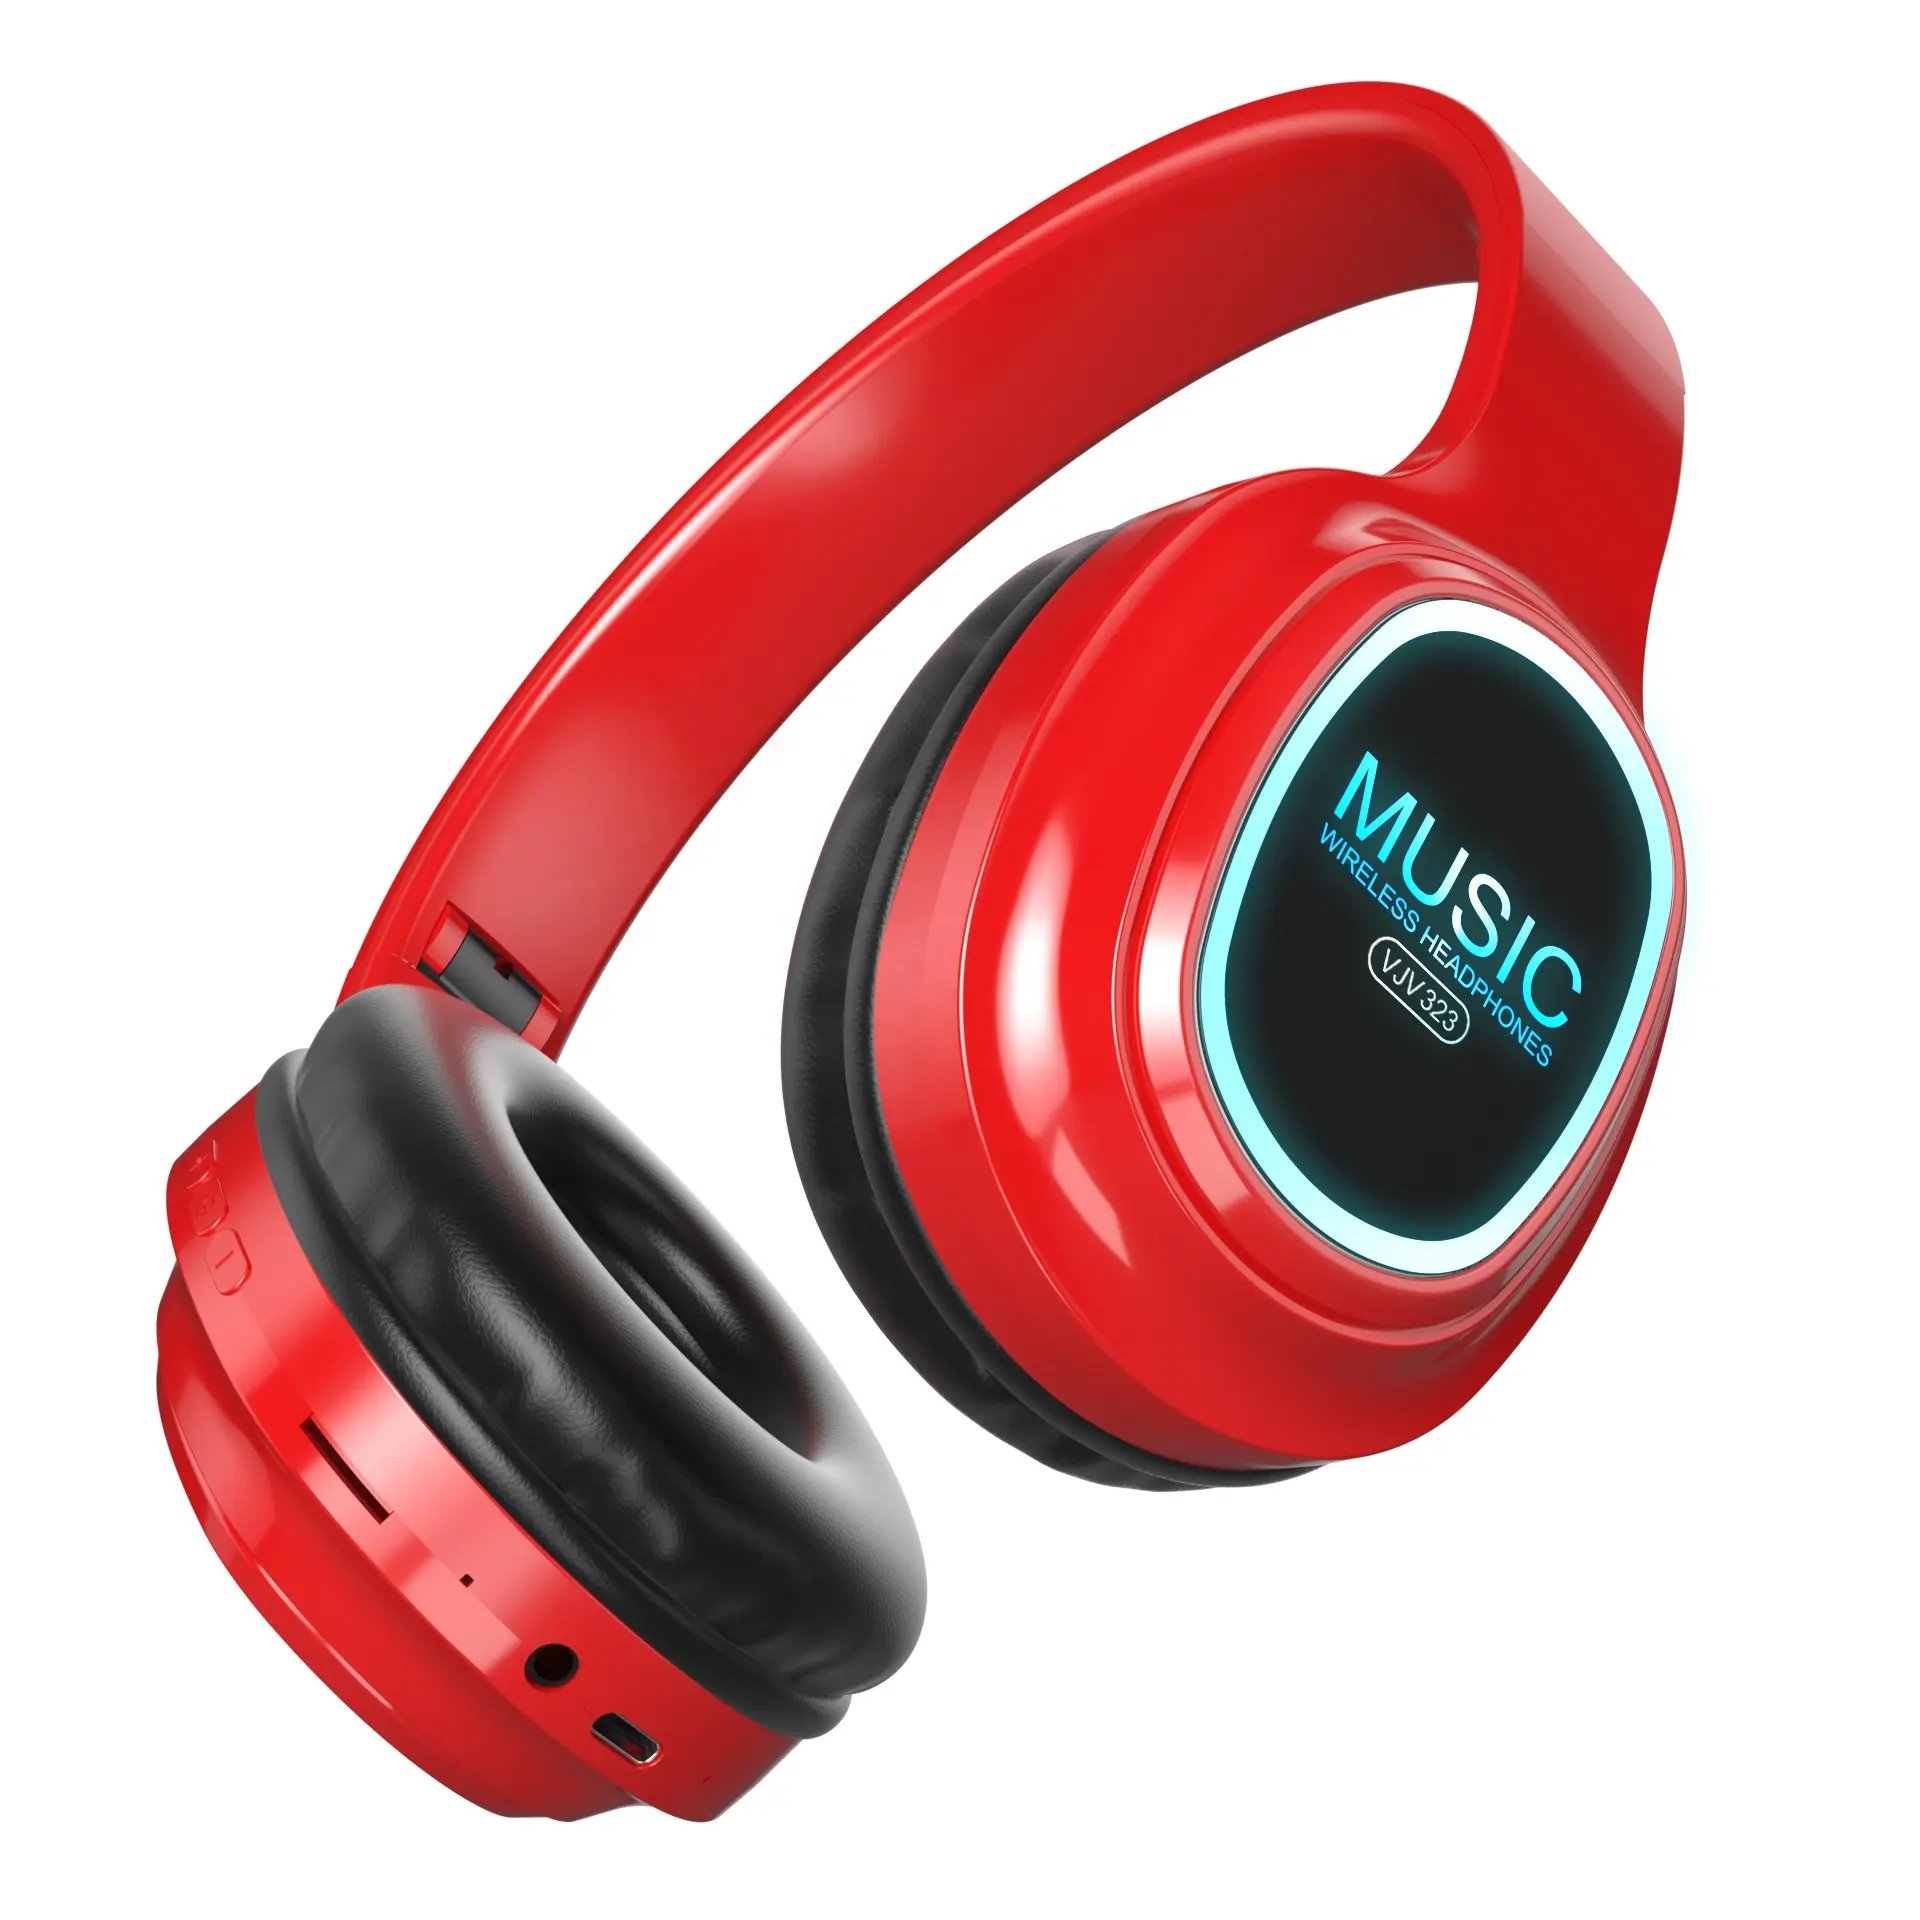 Cuffie per connessione wireless con colori popolari con logo personalizzato regali stereo auricolari auricolari di qualità audio